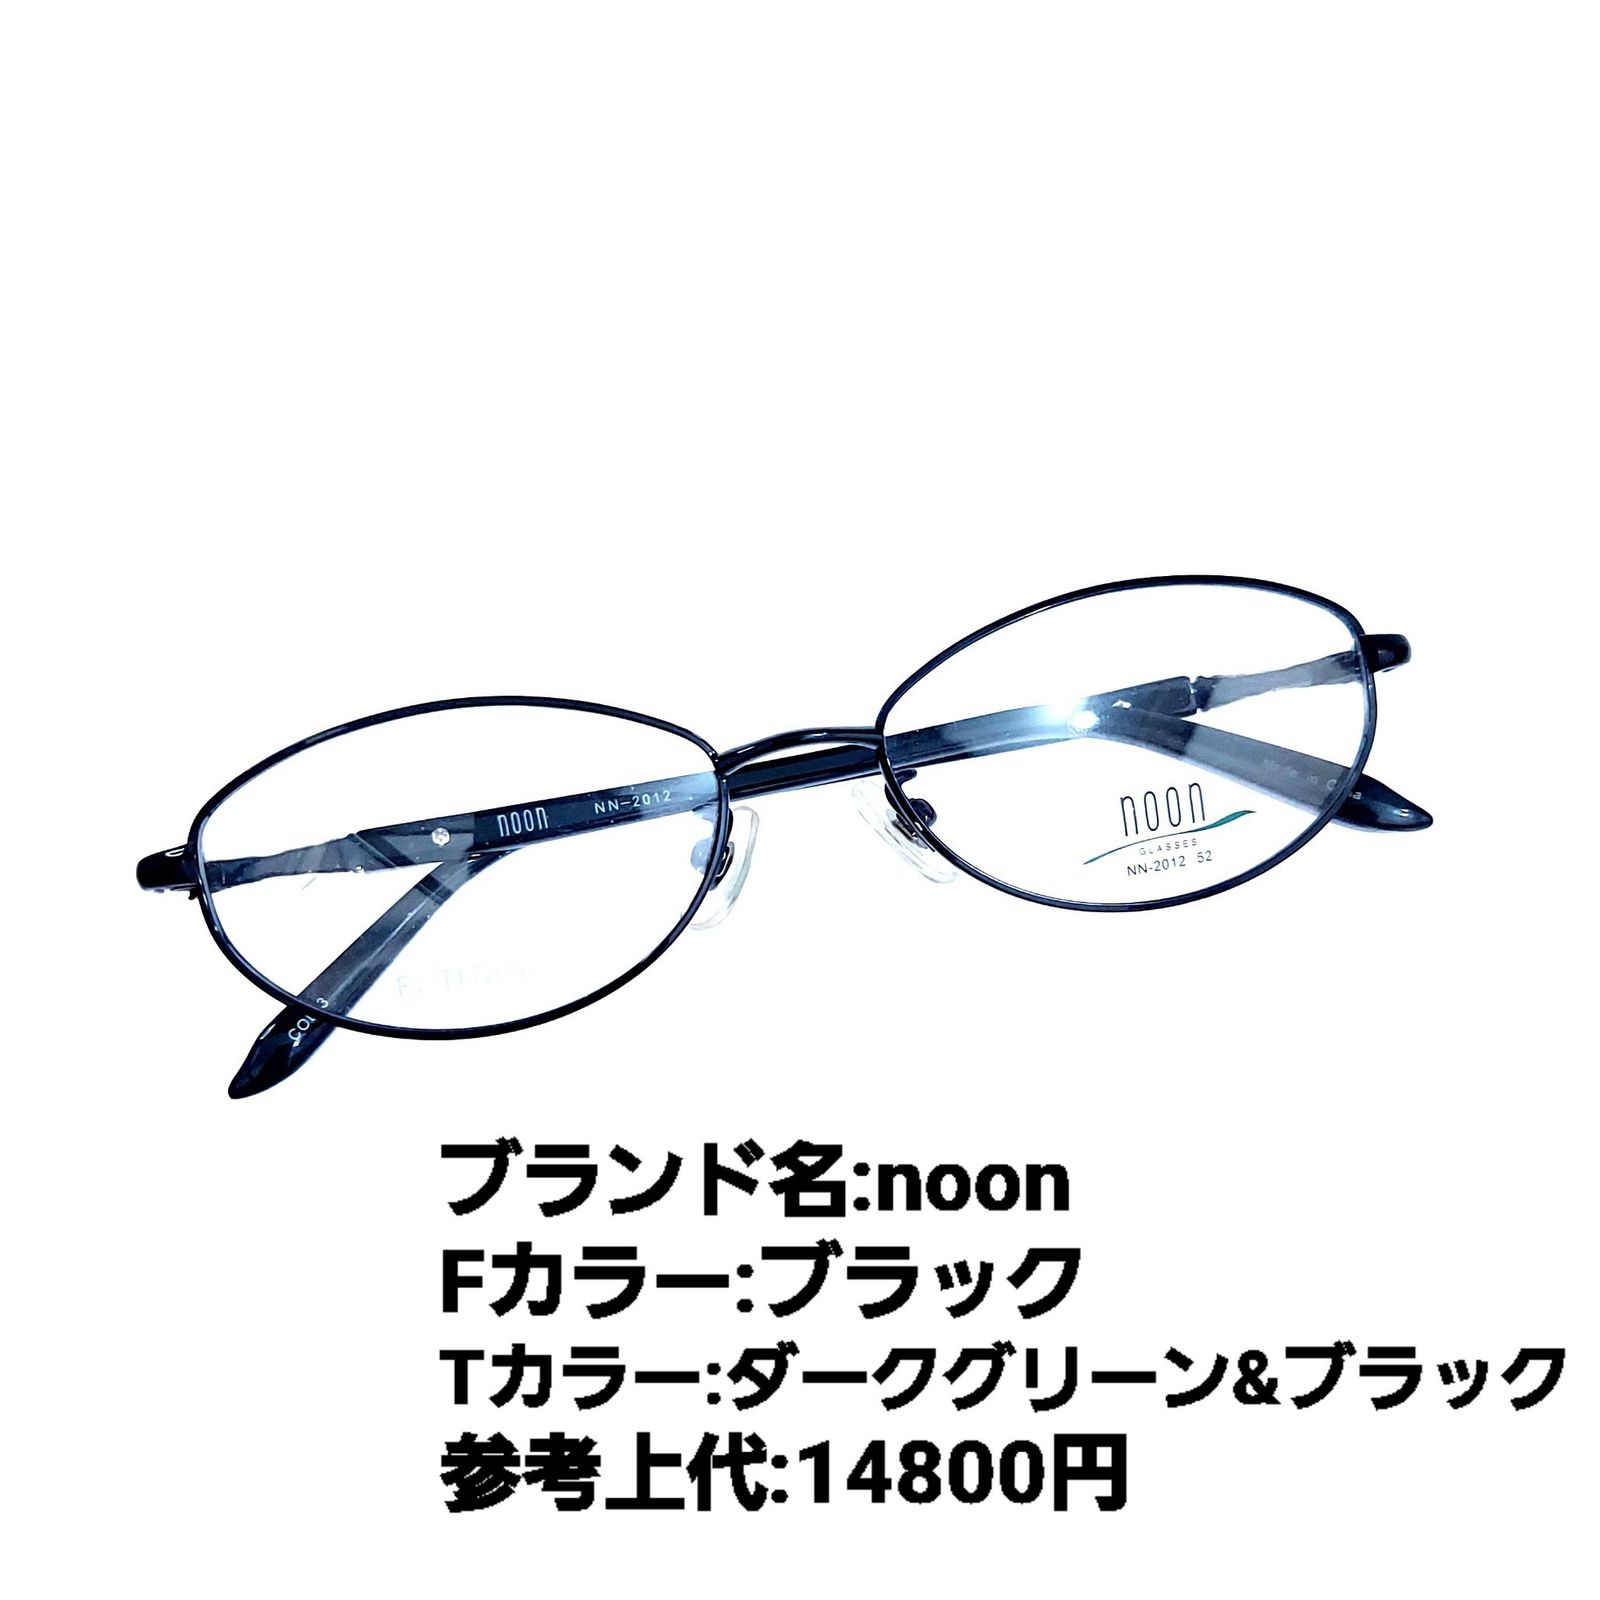 No.1190+メガネ noon【度数入り込み価格】 - サングラス/メガネ